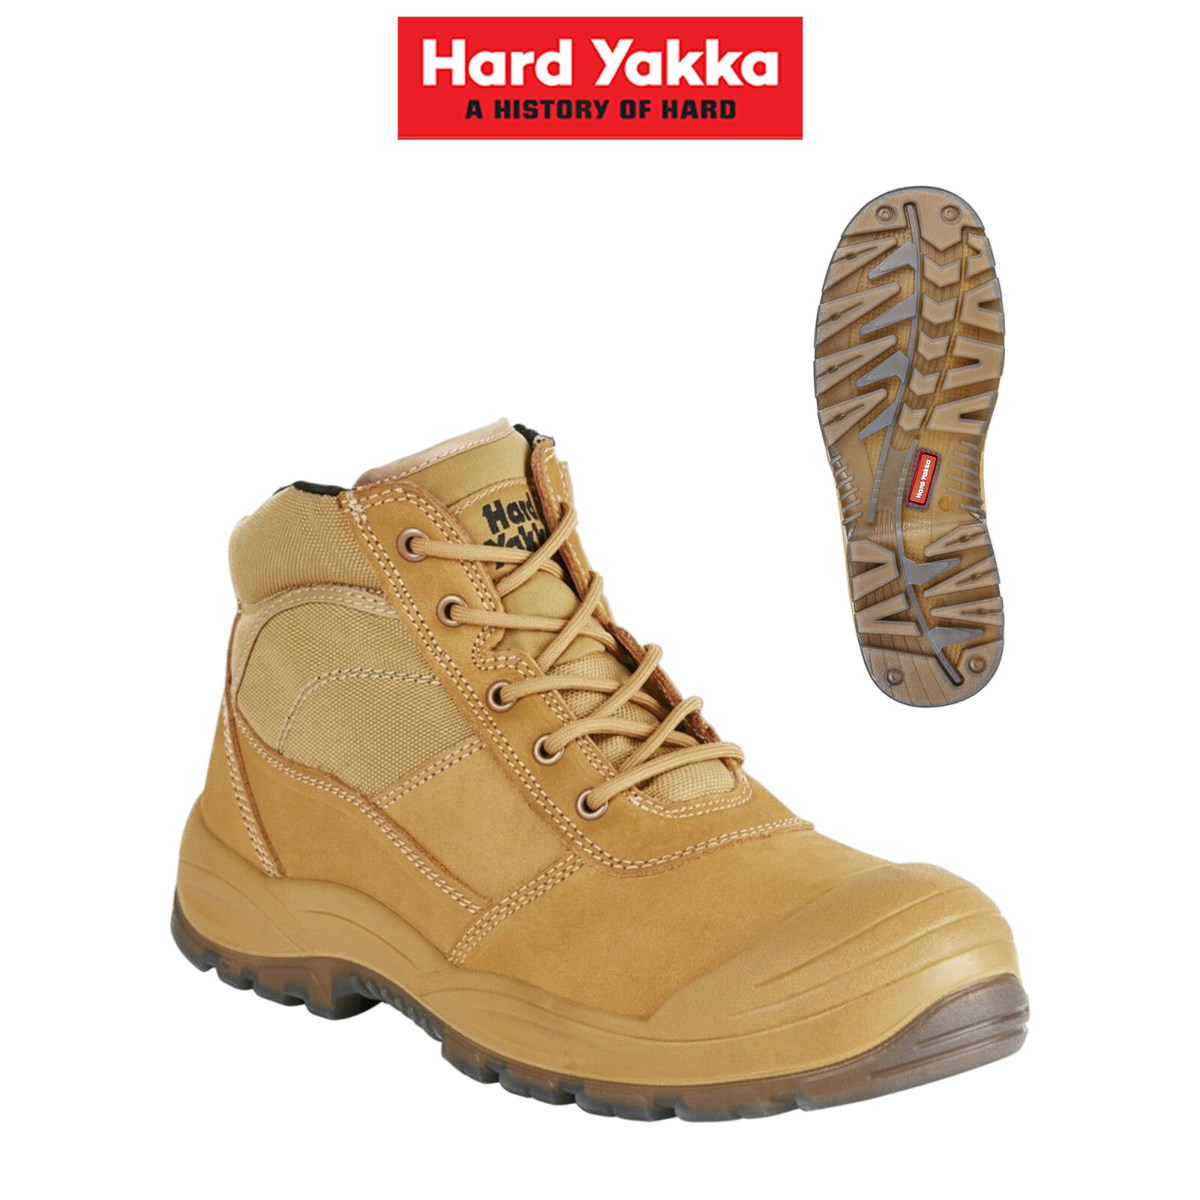 Hard Yakka Mens Utility Side Zip Safety Steel Cap Toe Work Boots Shoe Y60120